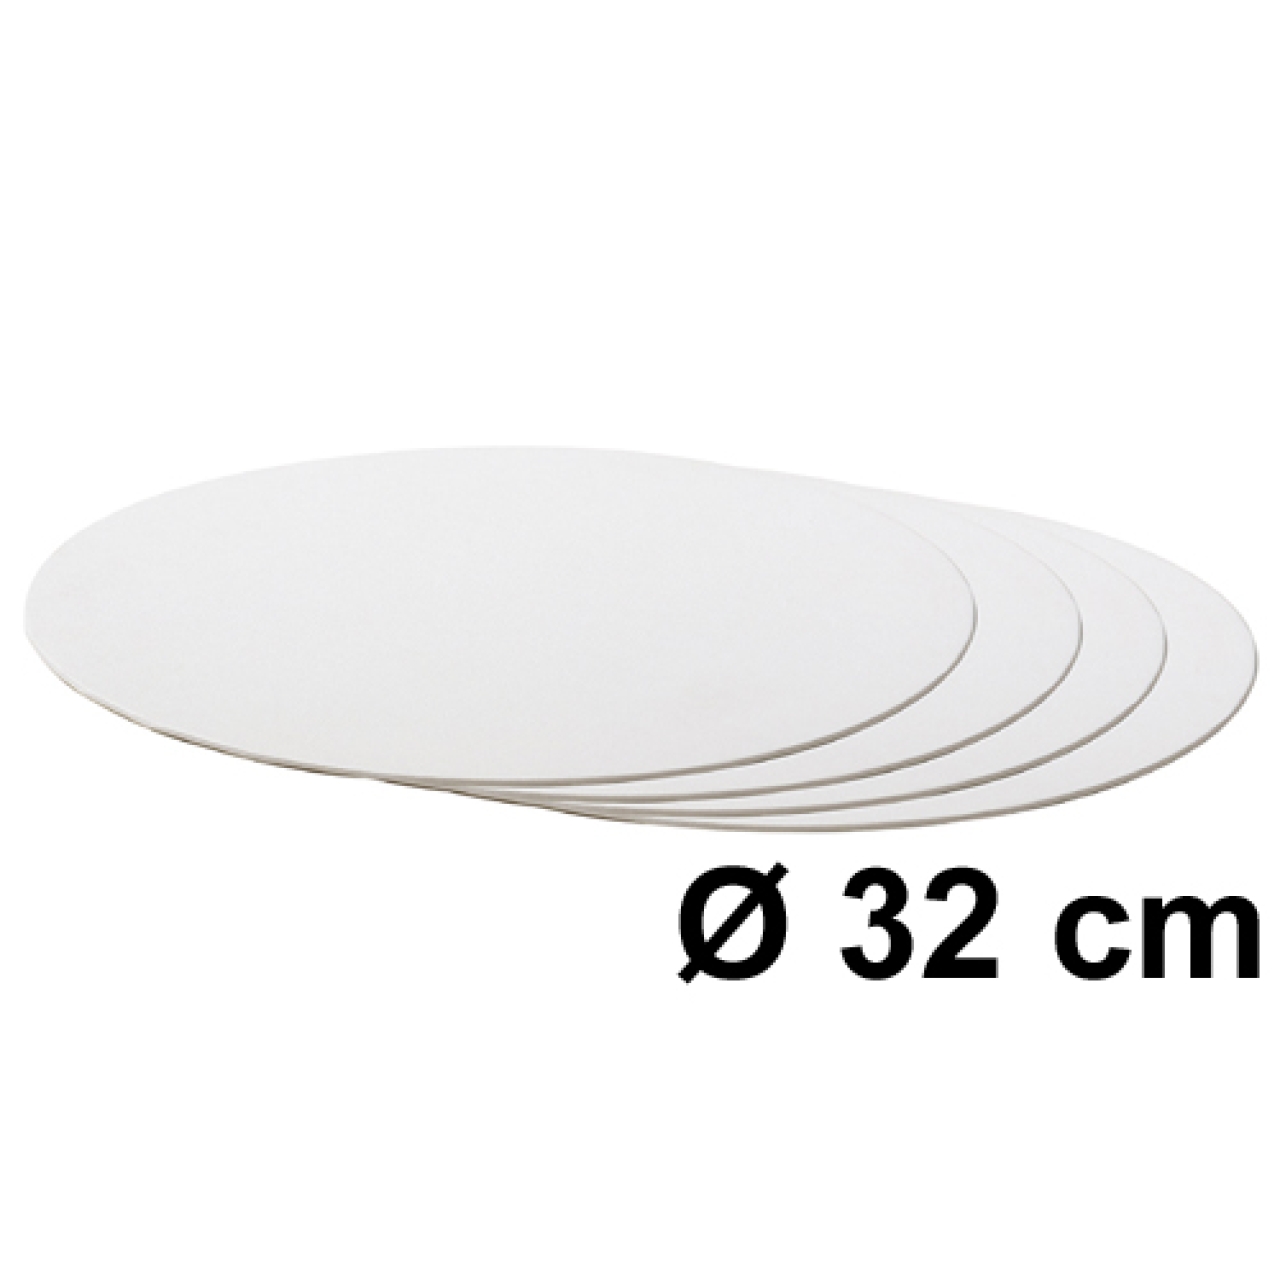 Tortenscheibe Weiß 32 cm